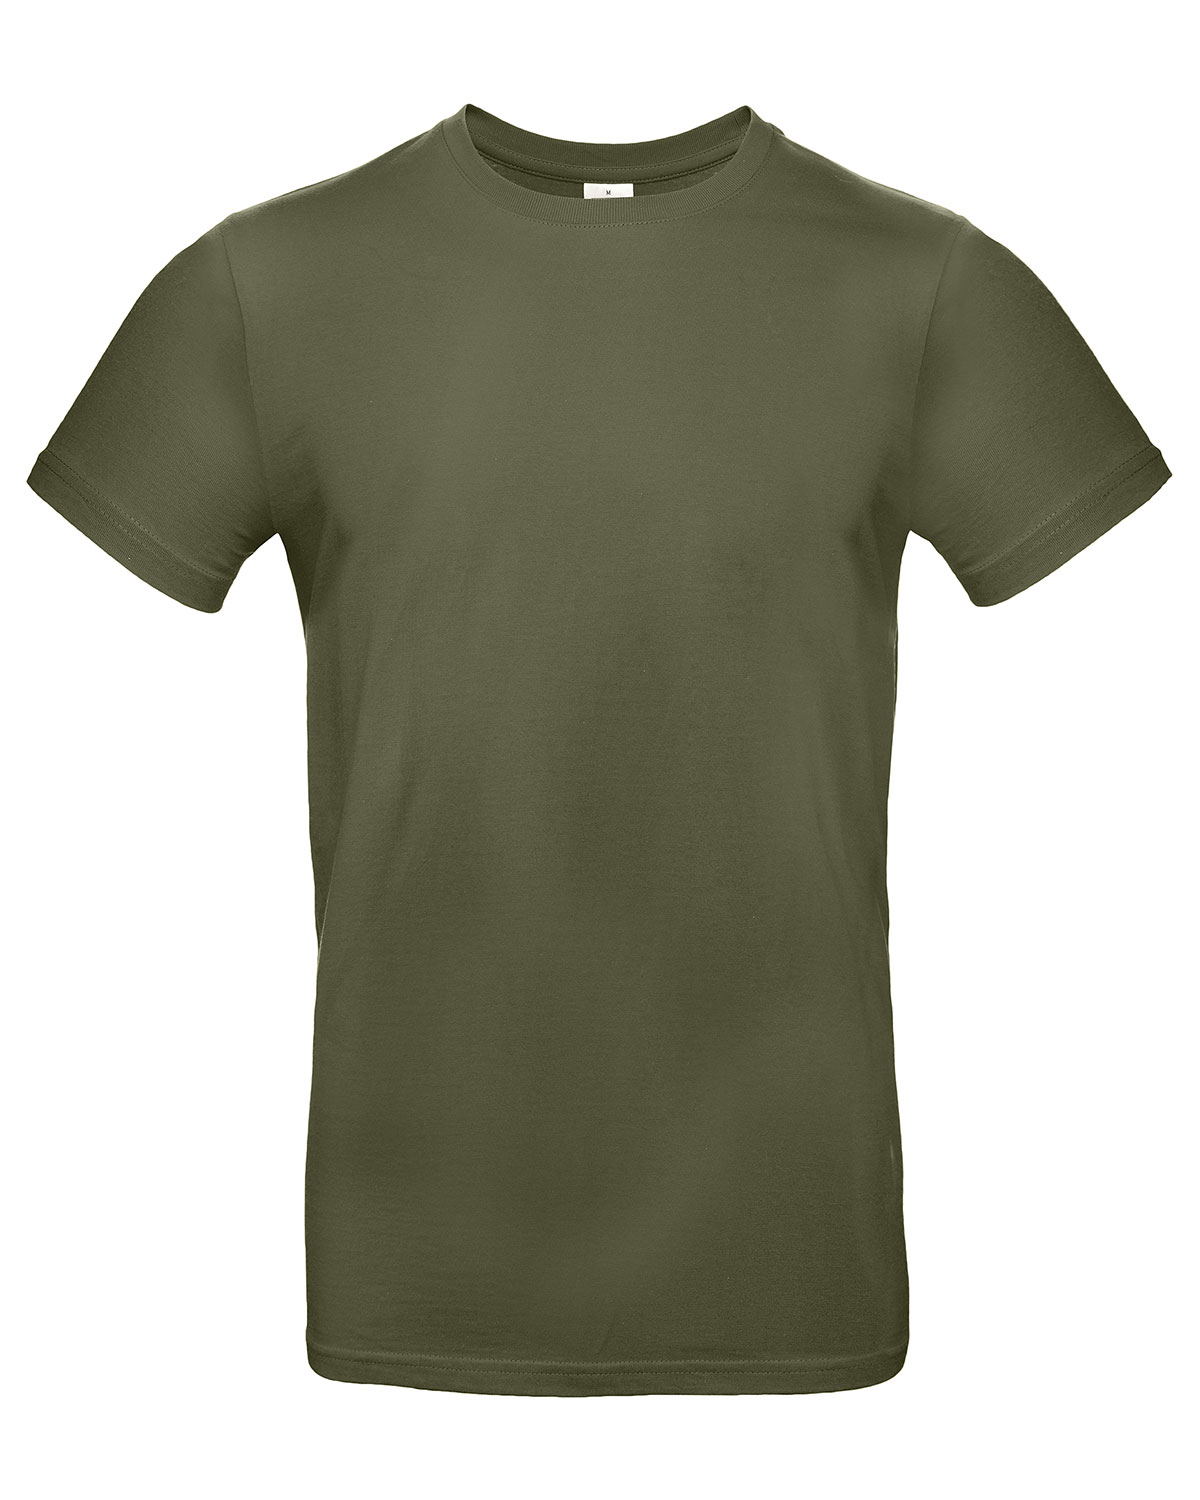 T-Shirt #E190 Urban Khaki 3XL